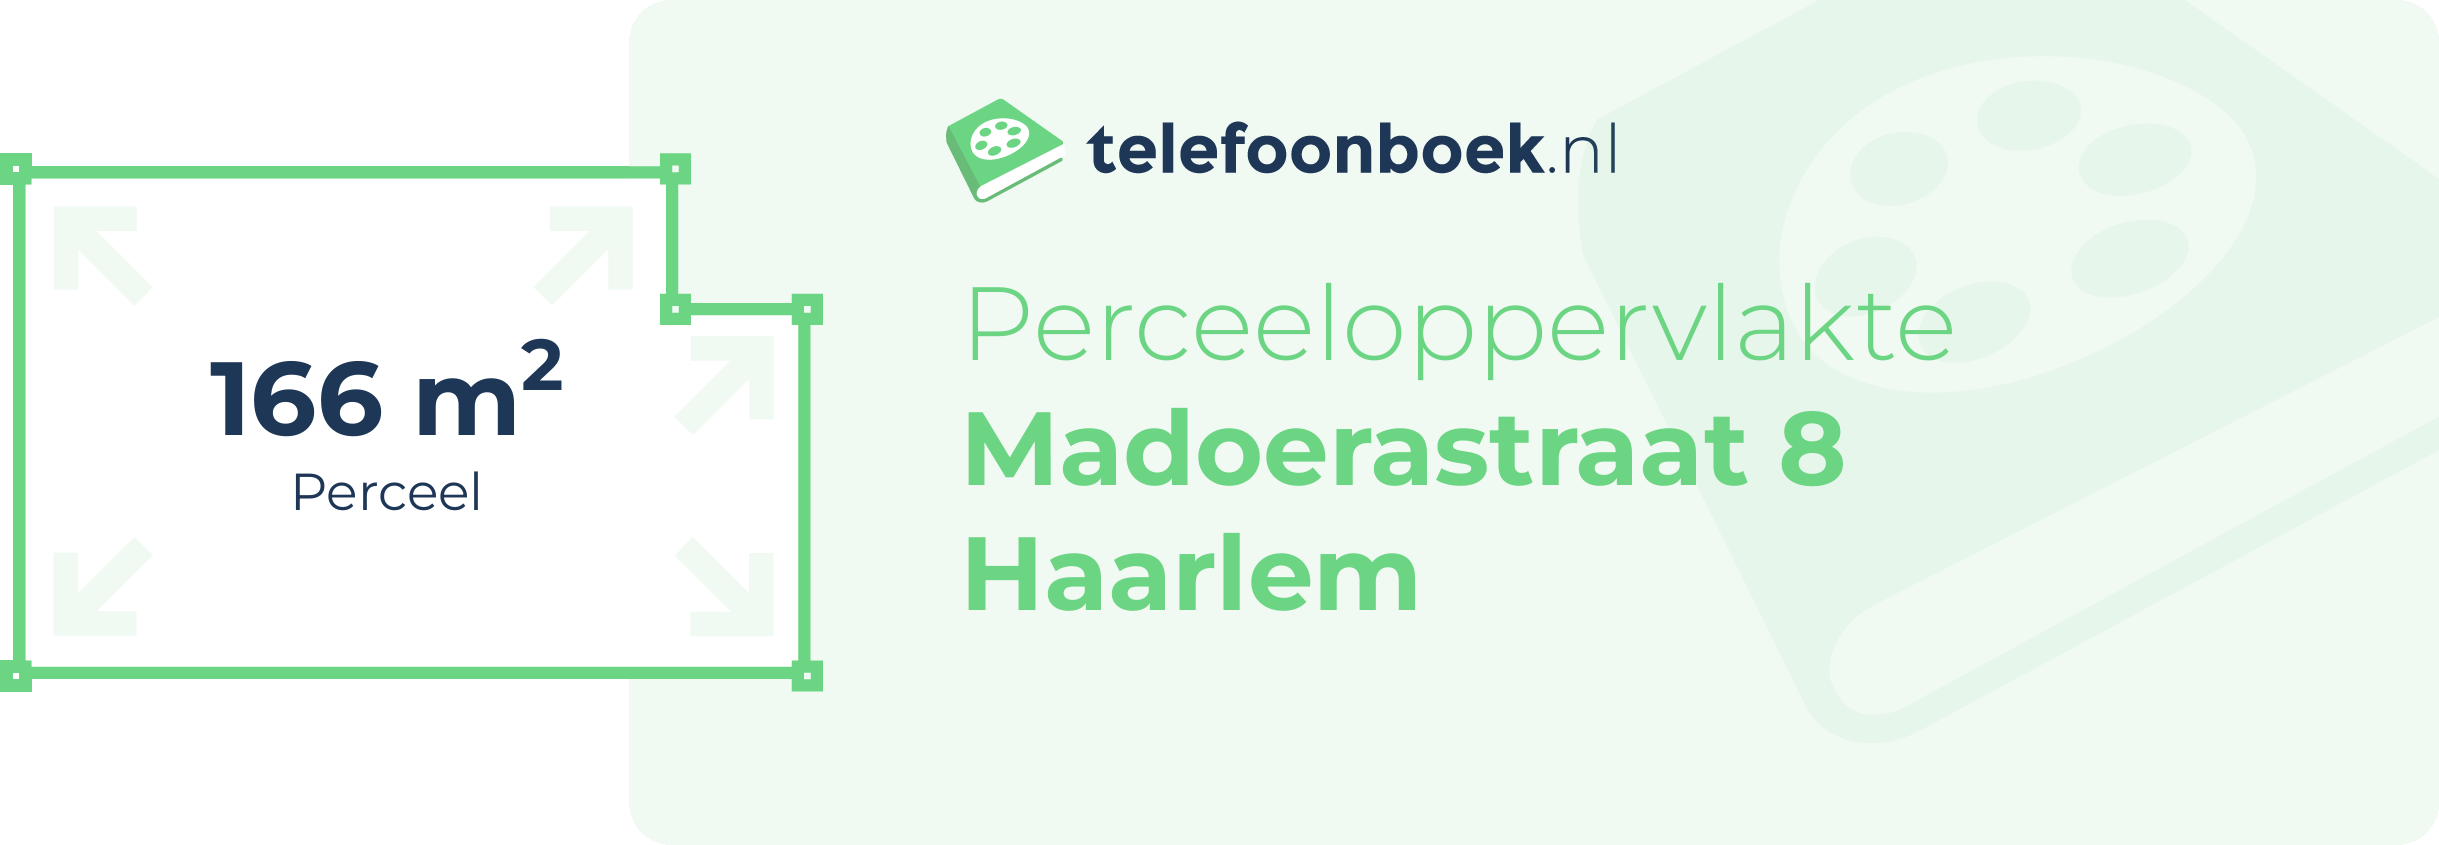 Perceeloppervlakte Madoerastraat 8 Haarlem